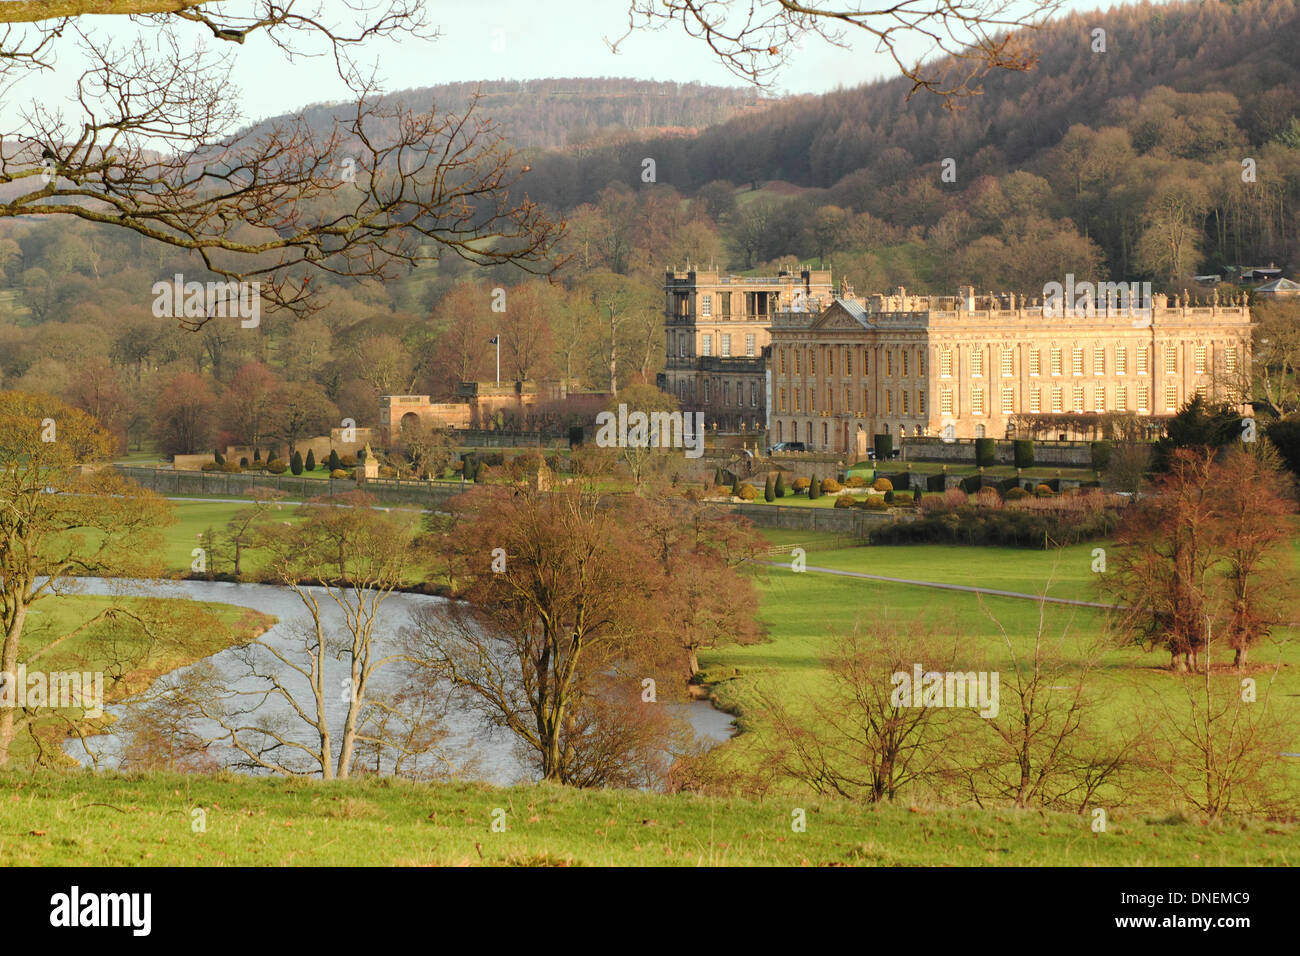 Recueillir des daims par le parc à Chatsworth House contre un gonflement du fleuve Derwent après les fortes pluies de l'hiver, parc national de Peak District, Derbyshire, Angleterre, RU Banque D'Images